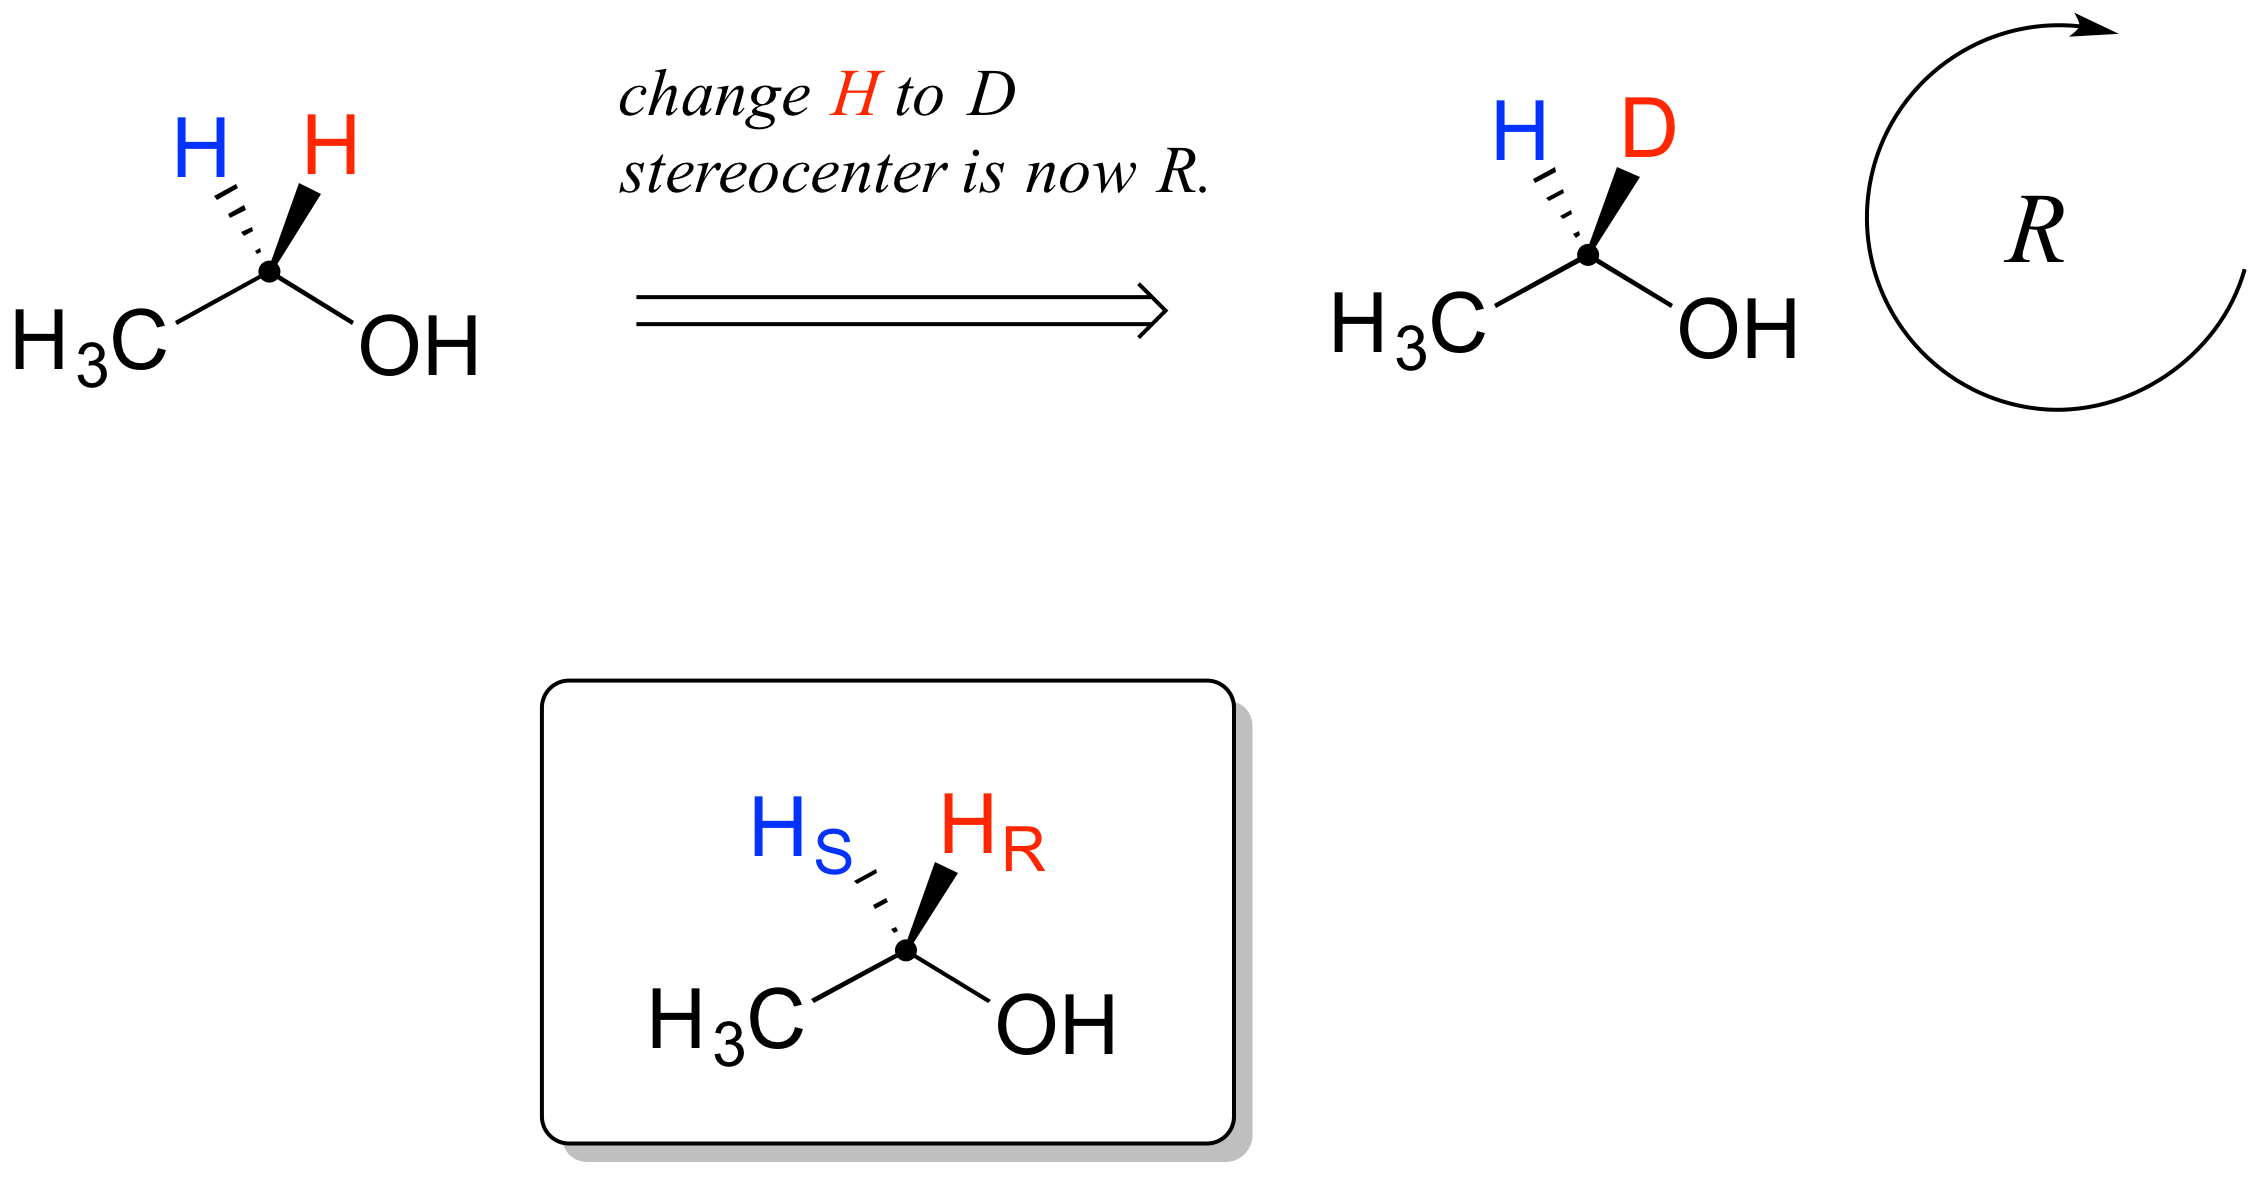 Carbono unido a metilo, O H y 2 hidrógenos (azul en guión y rojo en cuña). Rojo H se cambia a D y el estereocentro ahora es R. Si la H discontinua (azul) se hubiera cambiado a D, el estereocentro sería S.